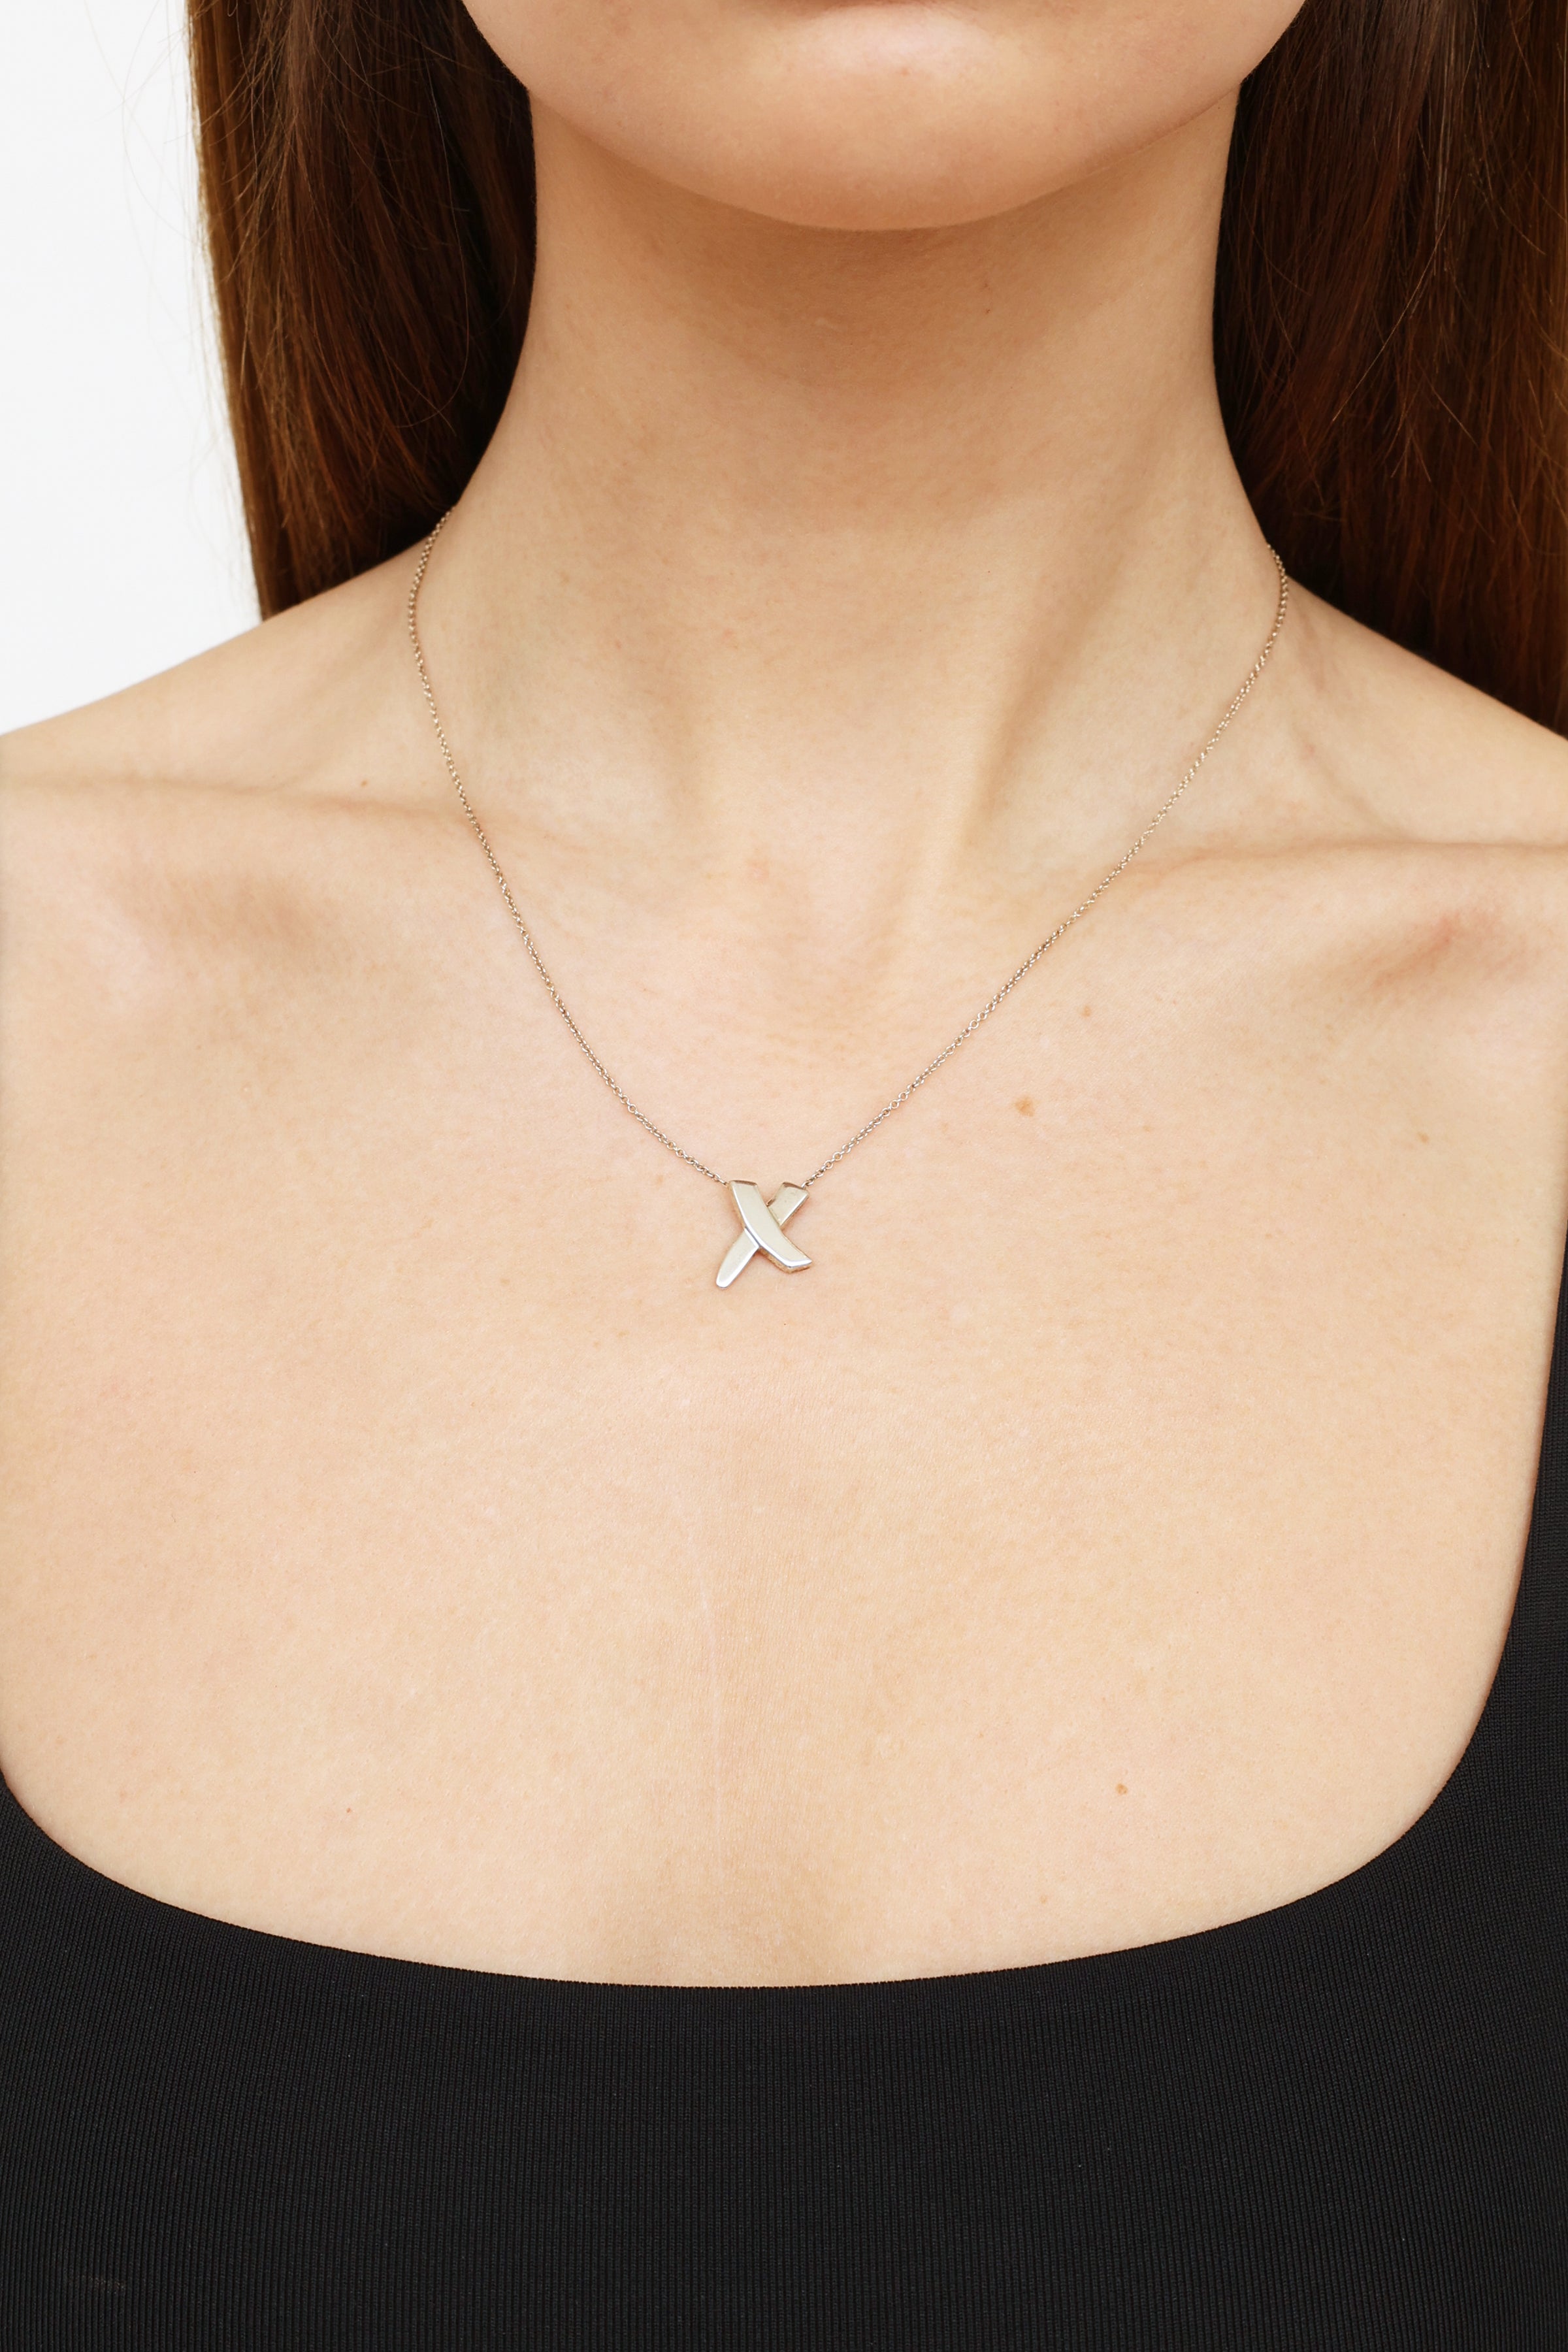 Tiffany & Co. Paloma Picasso Heart X Necklace | eBay